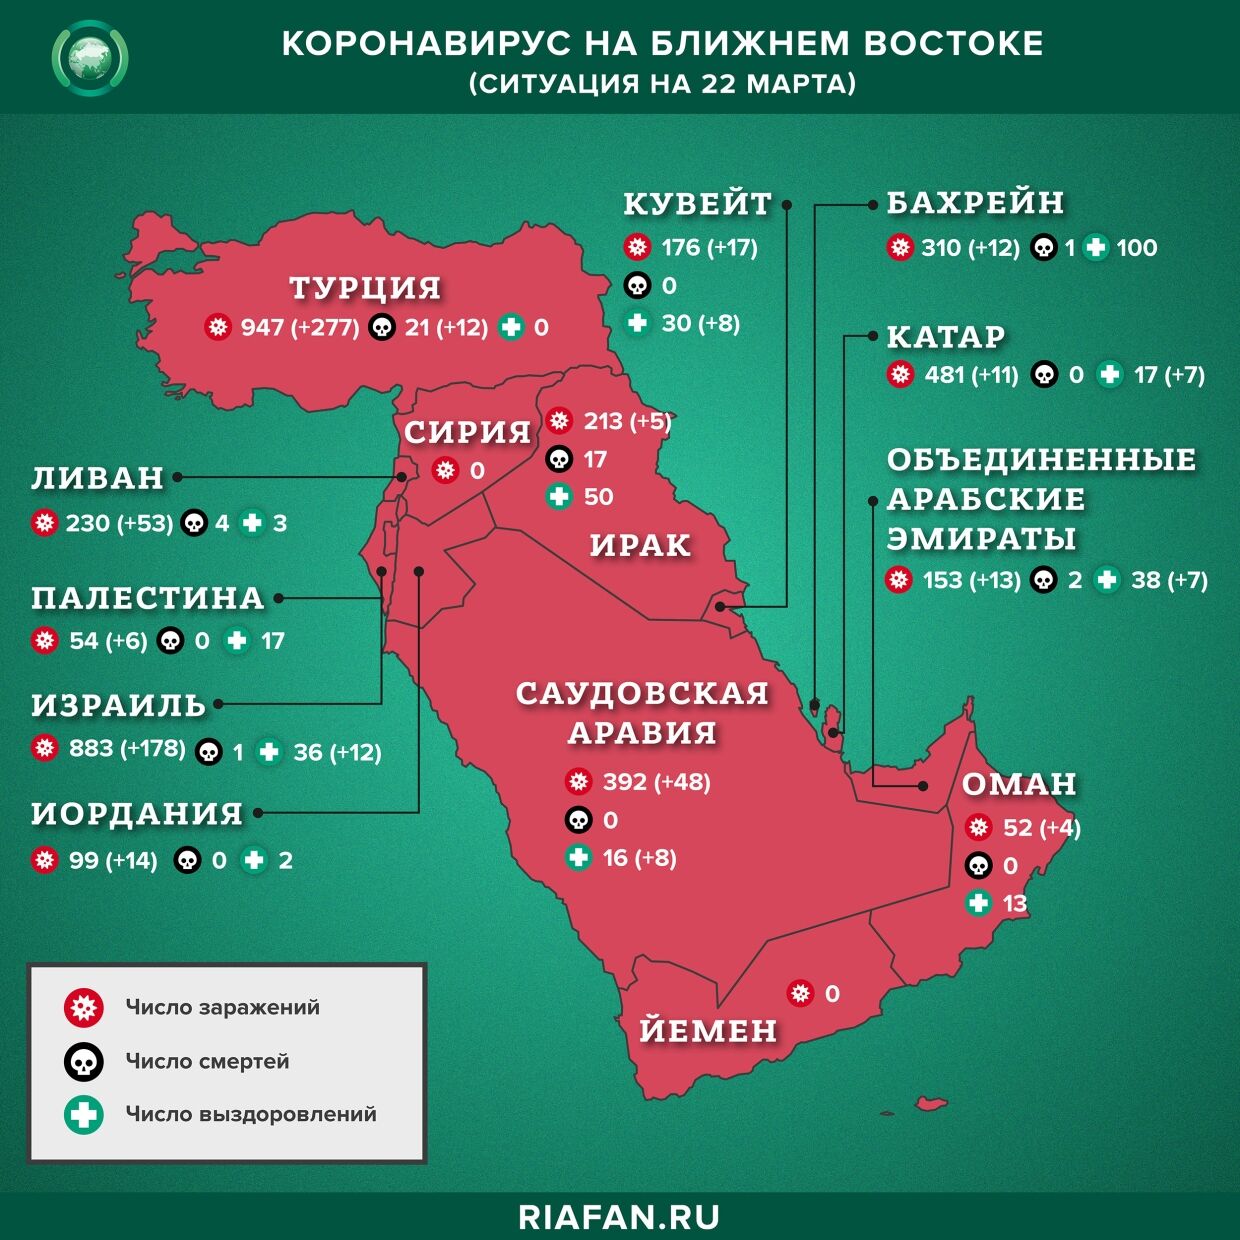 Коронавирус в арабском мире: суточная сводка по состоянию на 10.00 22 Mars 2020 de l'année